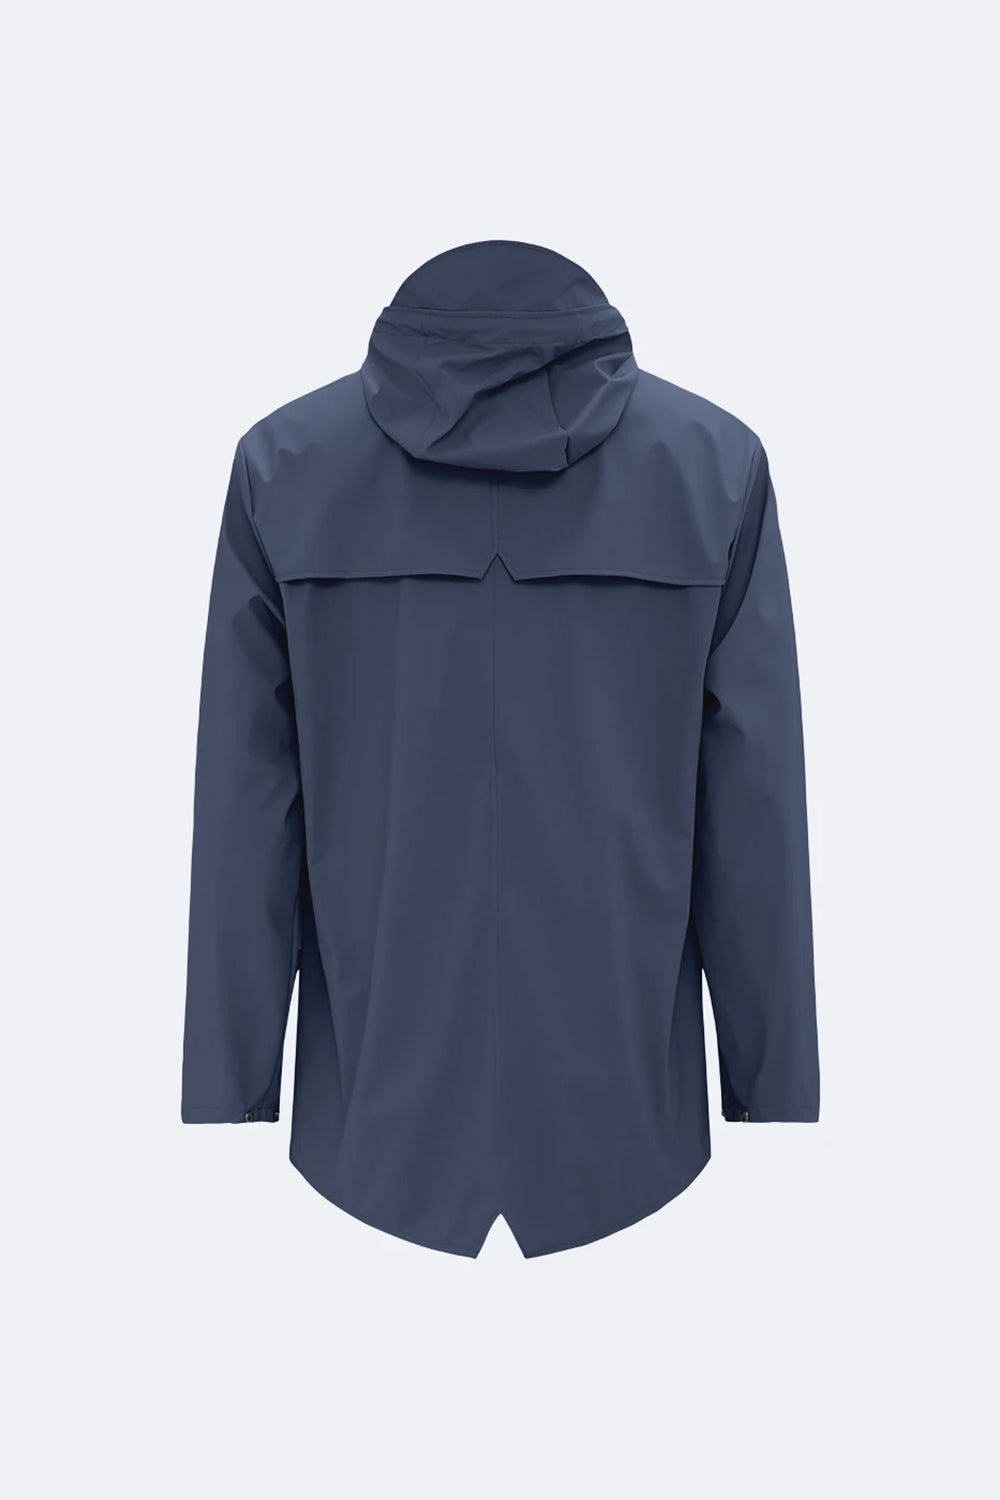 Rains Jacket (Navy Blue)